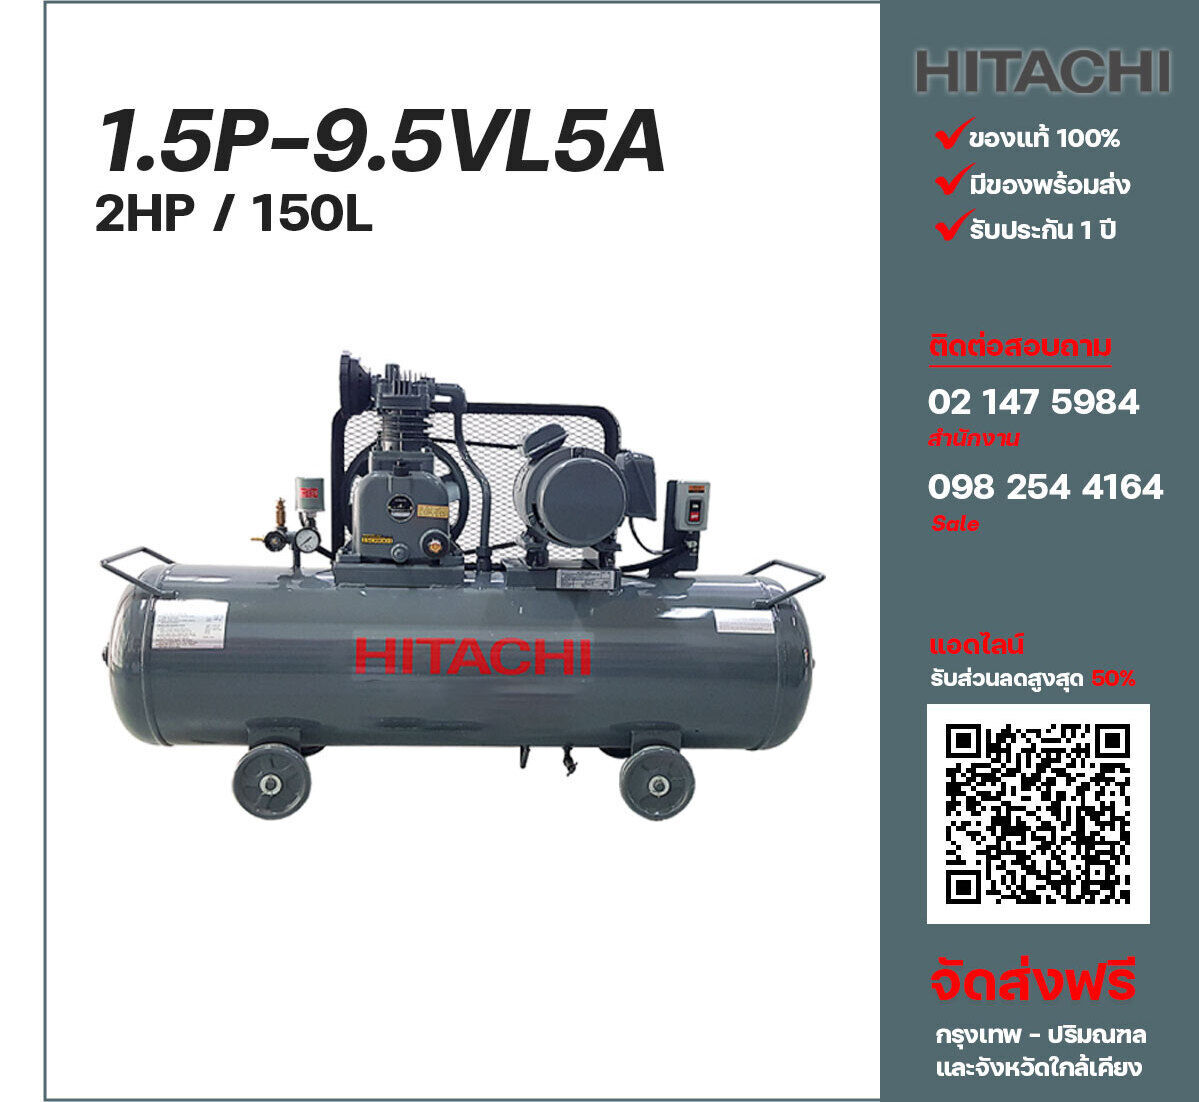 ปั๊มลมฮิตาชิ HITACHI รุ่นใช้น้ำมัน 1.5P-9.5VL5A380V ปั๊มลมลูกสูบ ขนาด 1 สูบ 2 แรงม้า 150 ลิตร Hitachi พร้อมมอเตอร์ Hitachi ไฟ 380V ส่งฟรี กรุงเทพฯ-ปริมณฑล รับประกัน 1 ปี